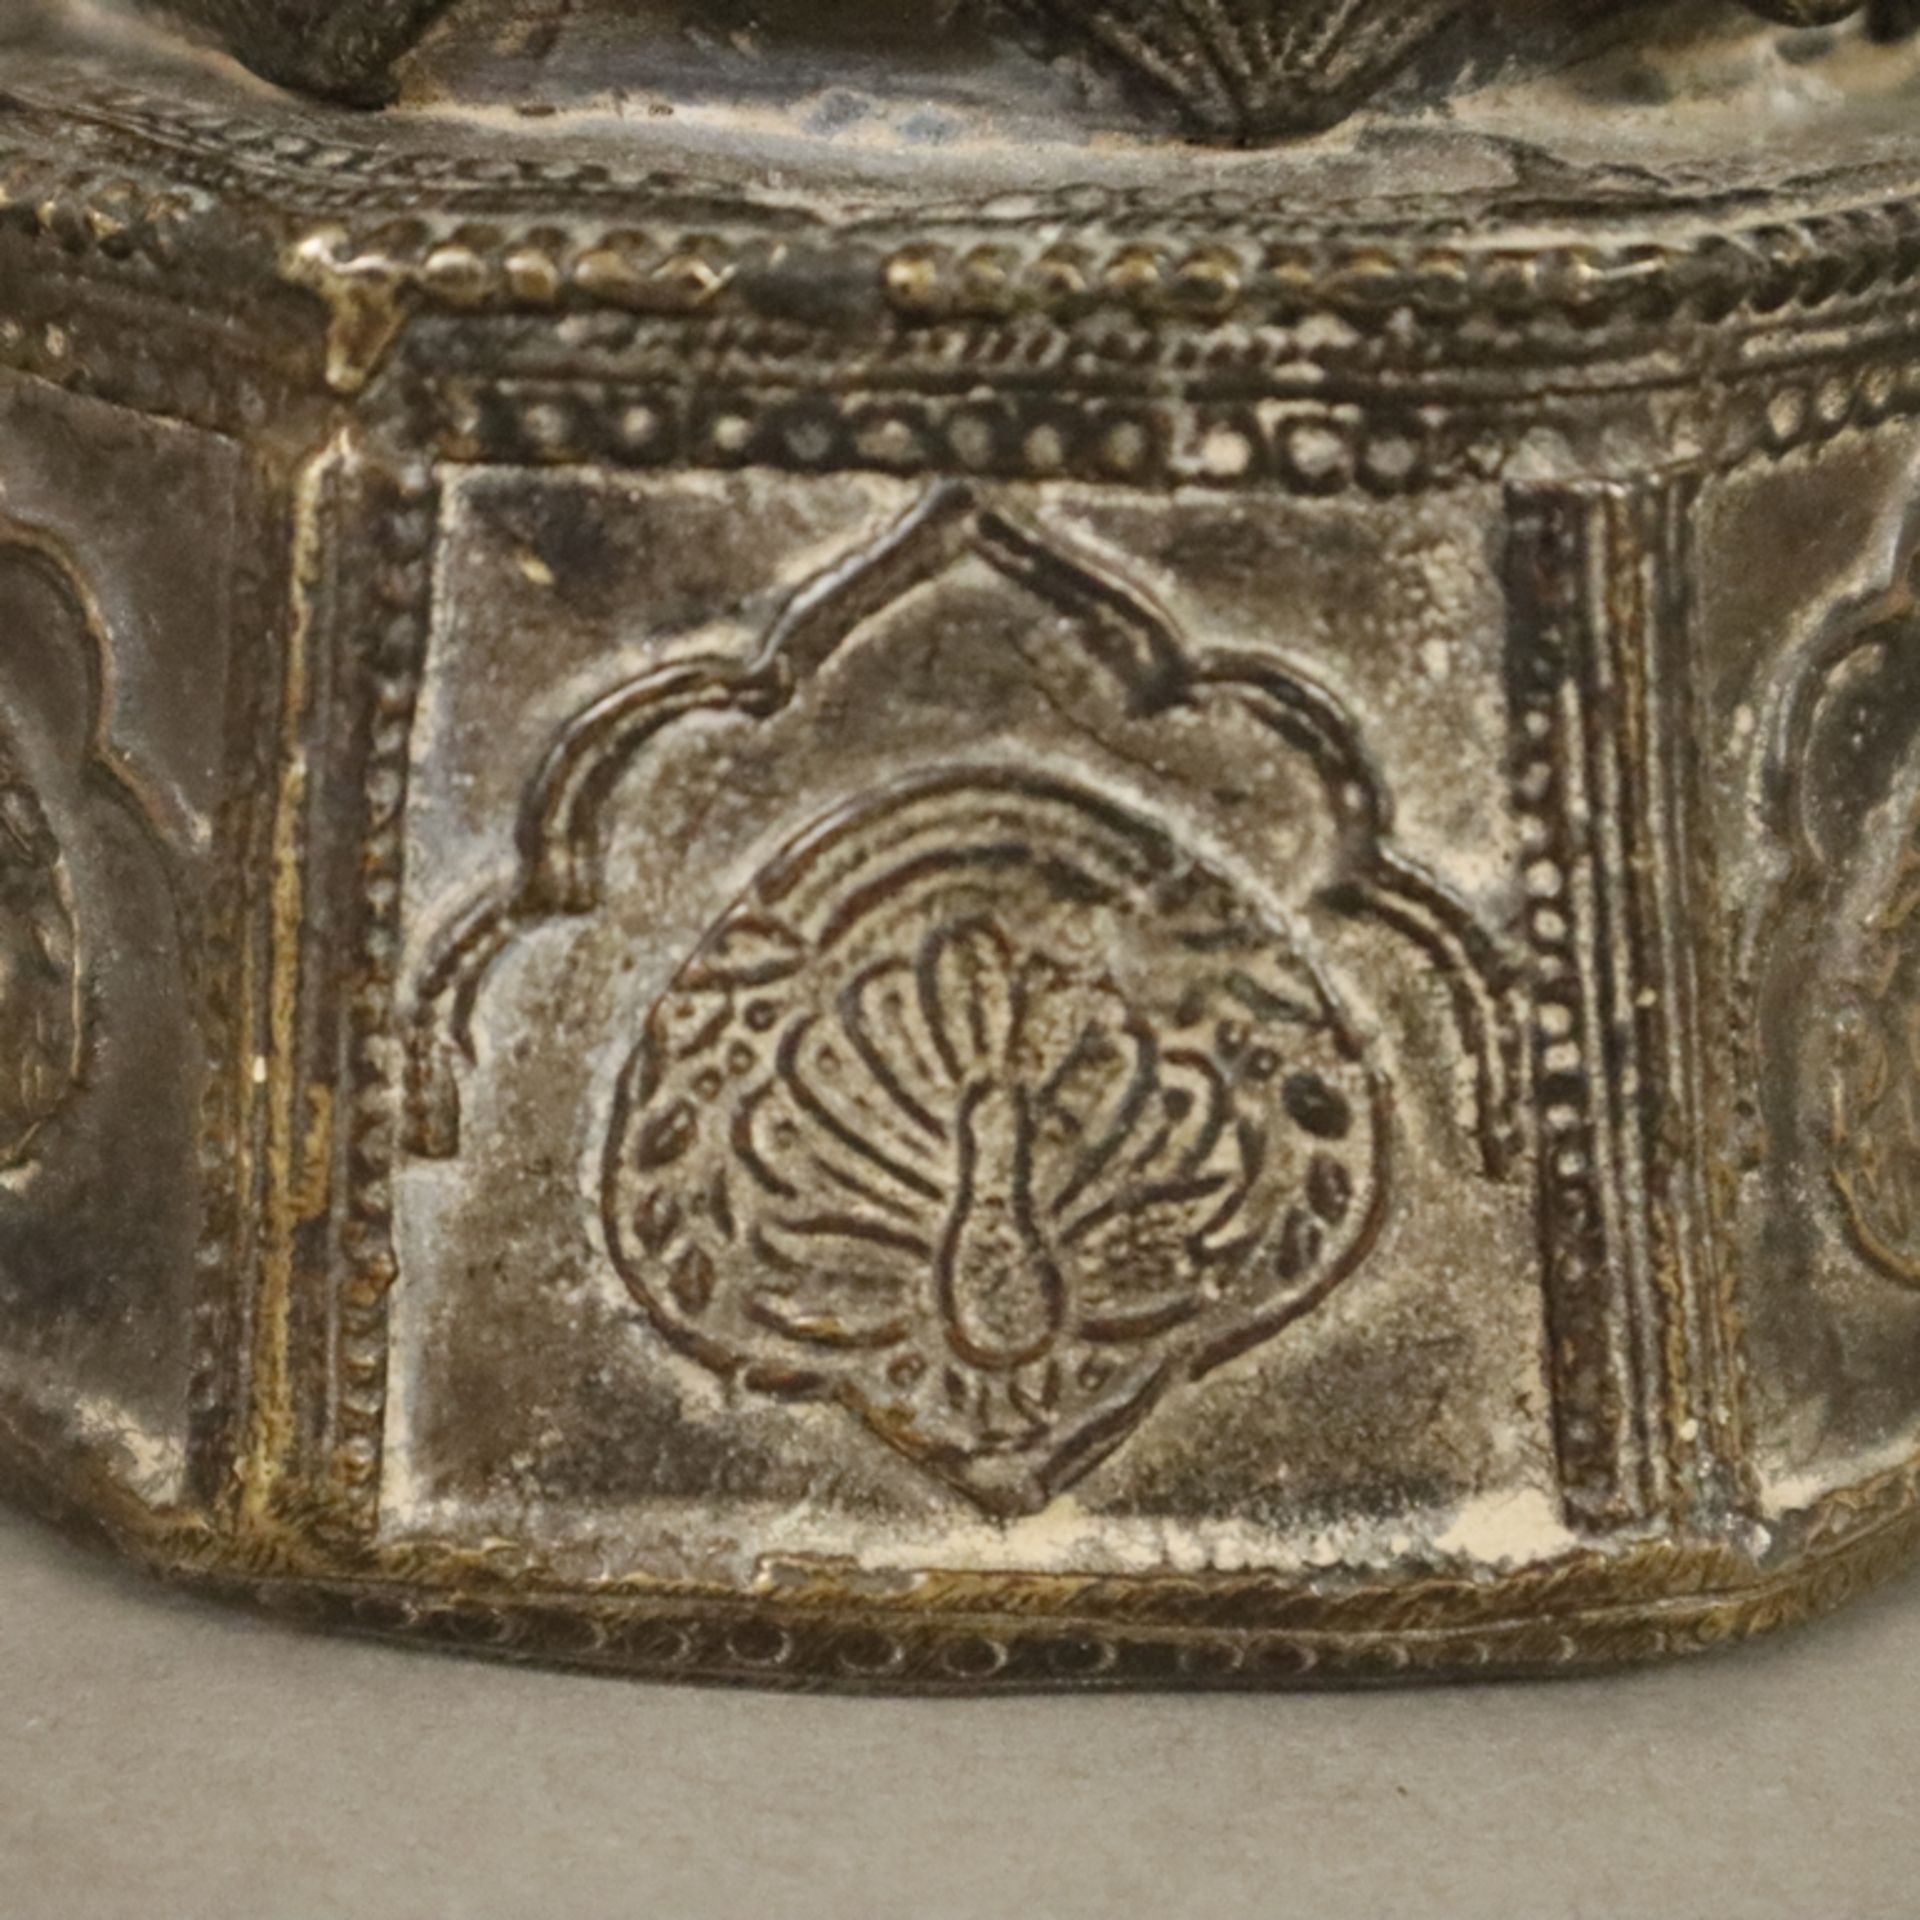 Bronzegefäß - wohl großes Tintenfass, Indien, unterer Teil der Wandung oktogonal geformt, oberer Te - Image 7 of 9